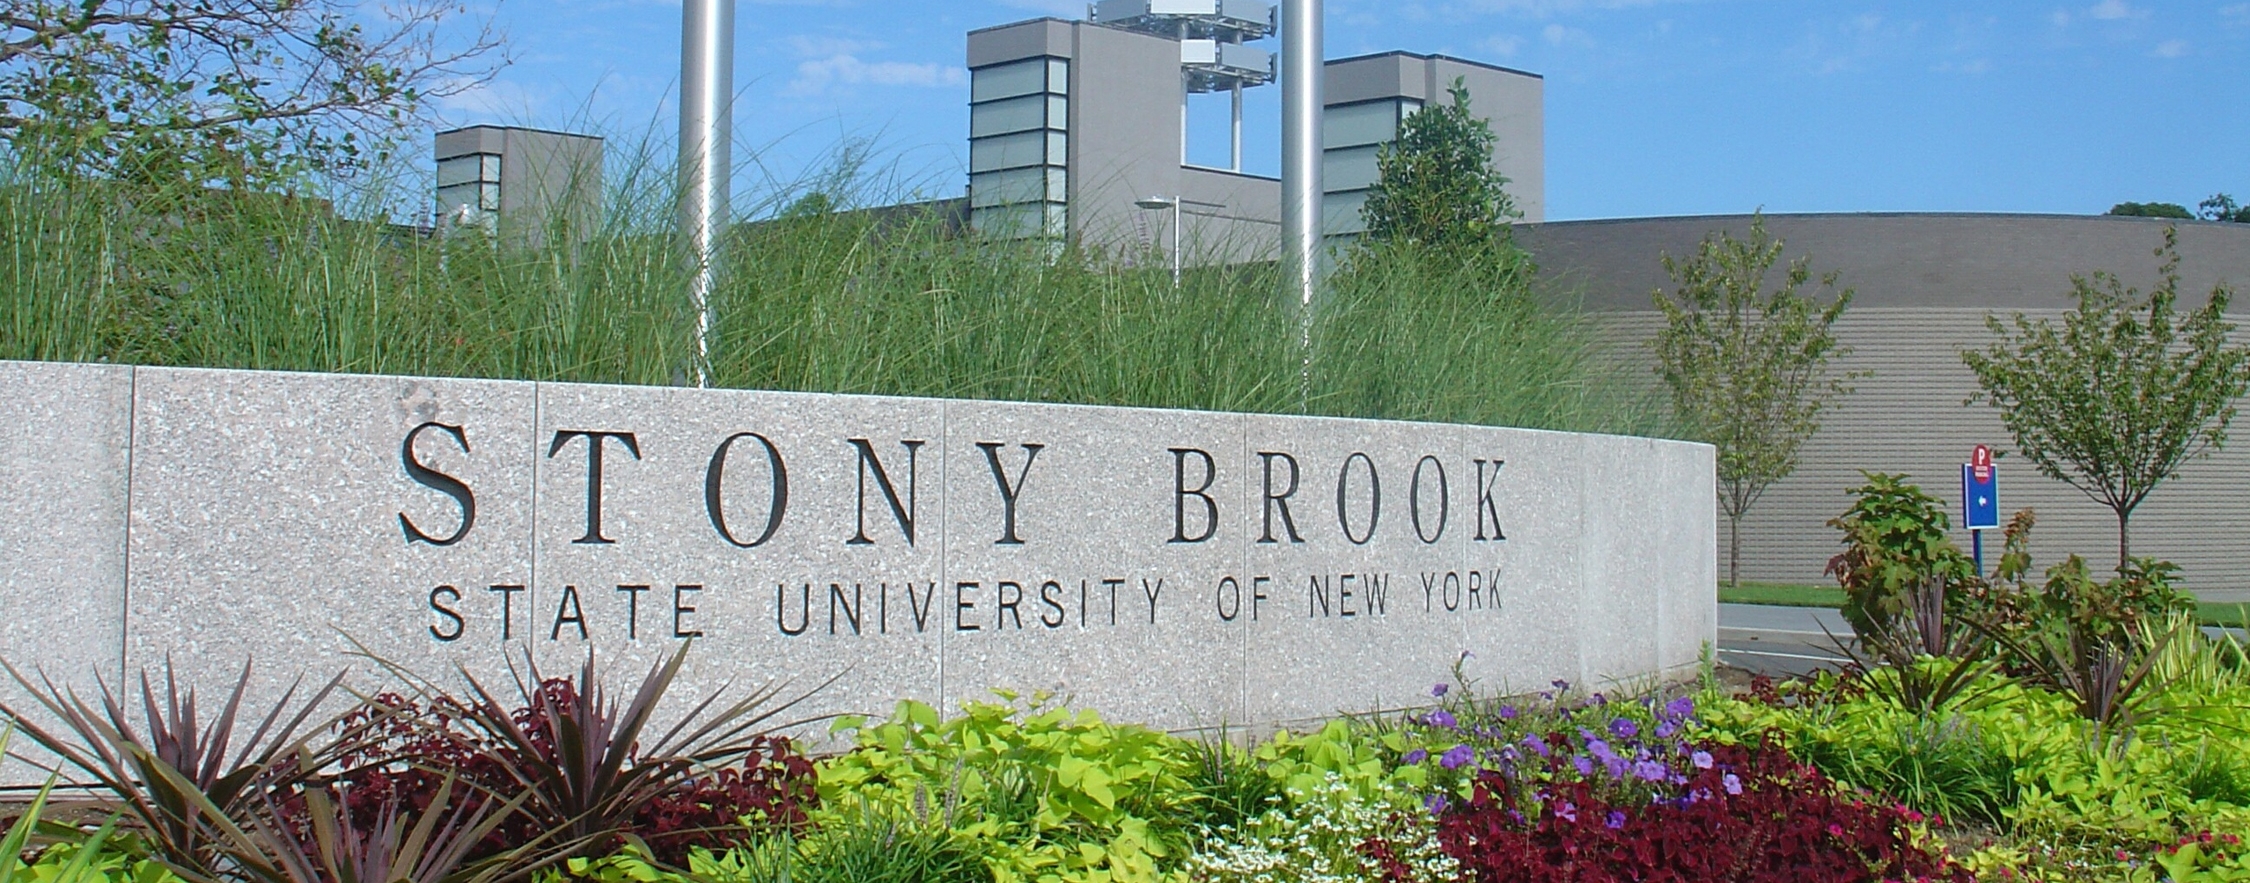 Stony Brook, NY; Stony Brook University: Entrance